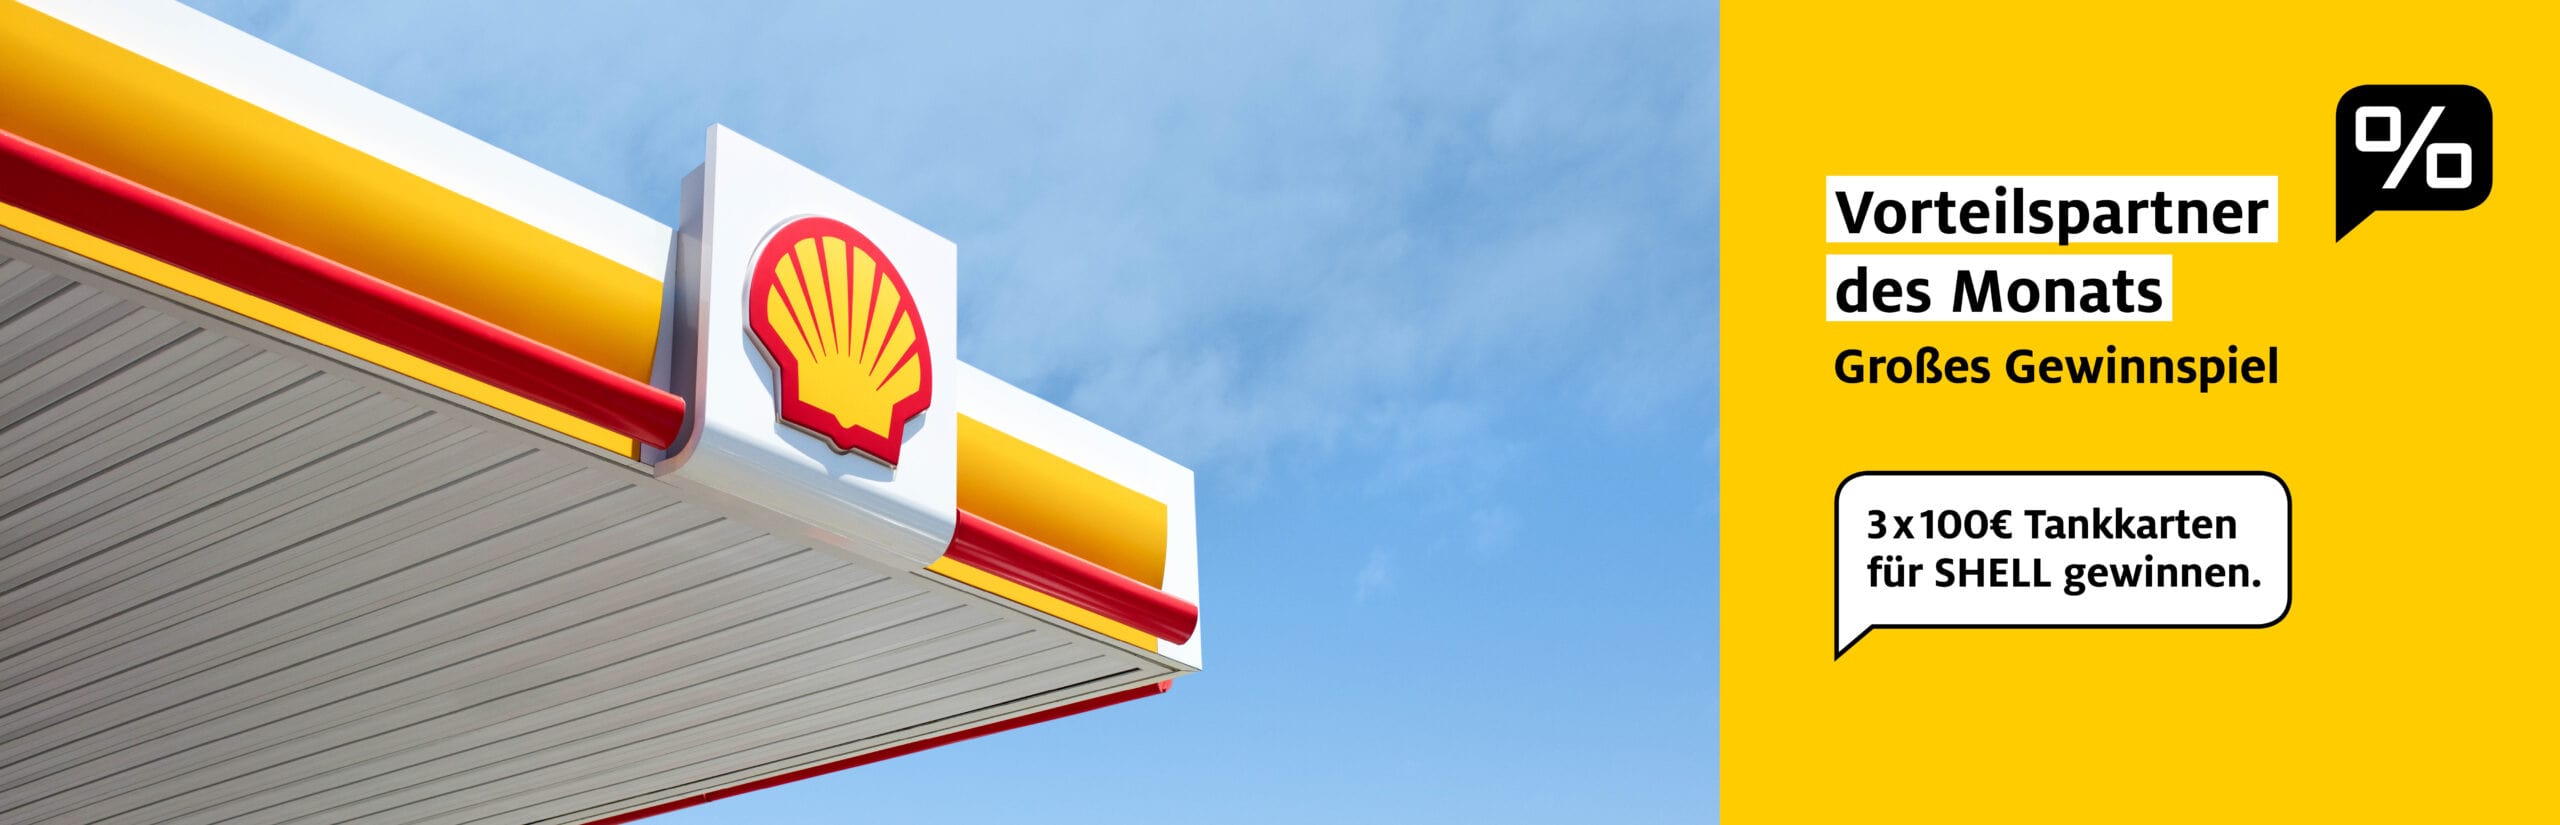 3 x 100€ Tankkarten für Shell gewinnen